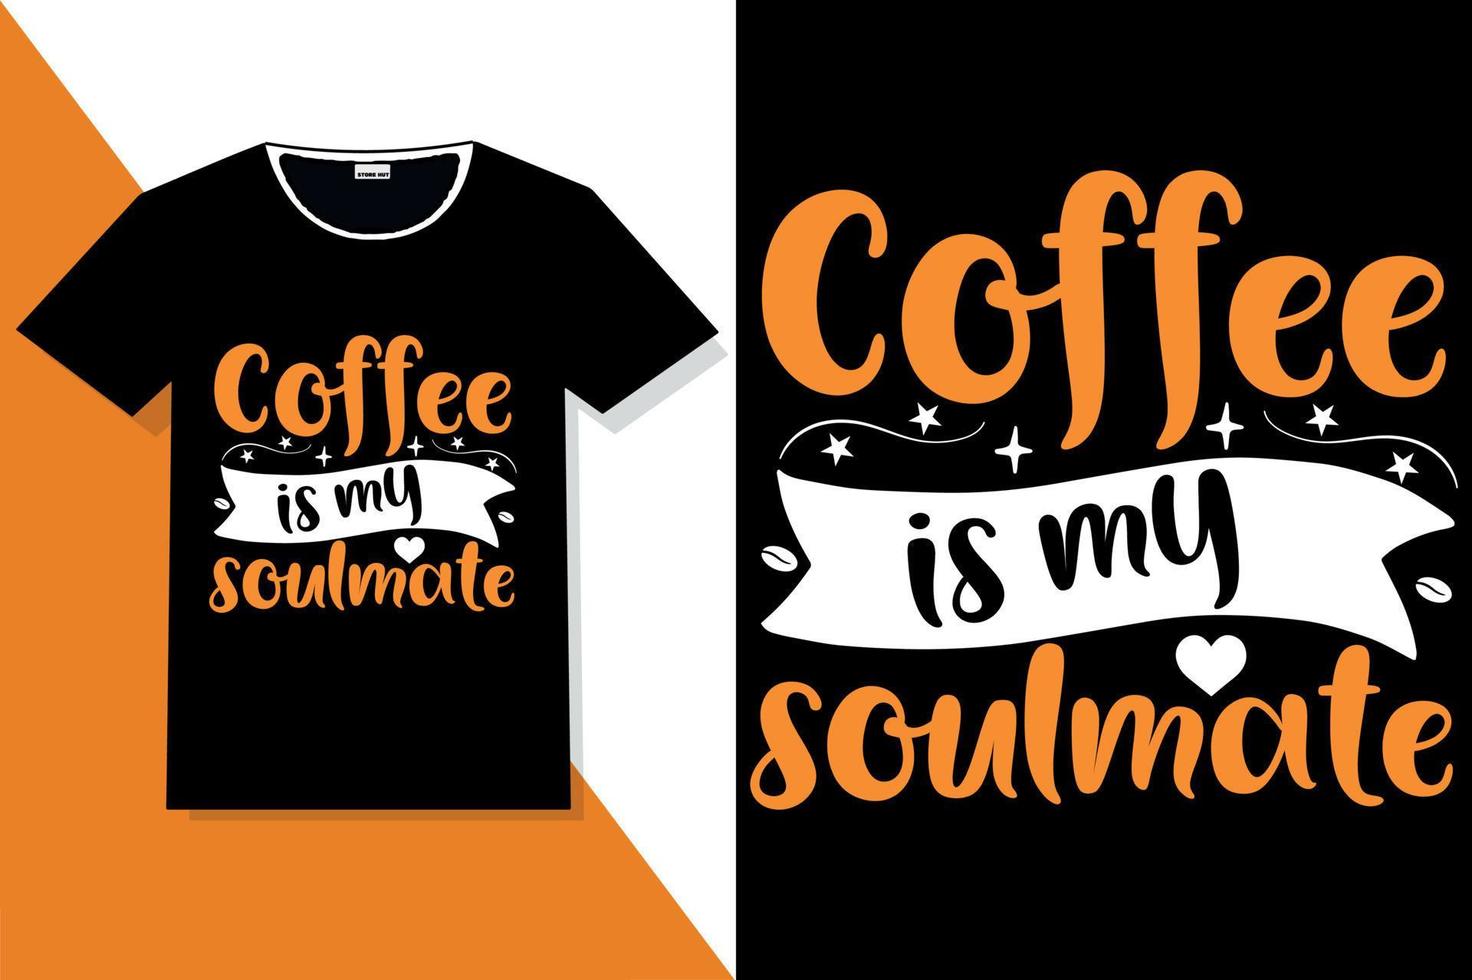 caffè motivazione citazioni tipografia o caffè tipografia t camicia vettore